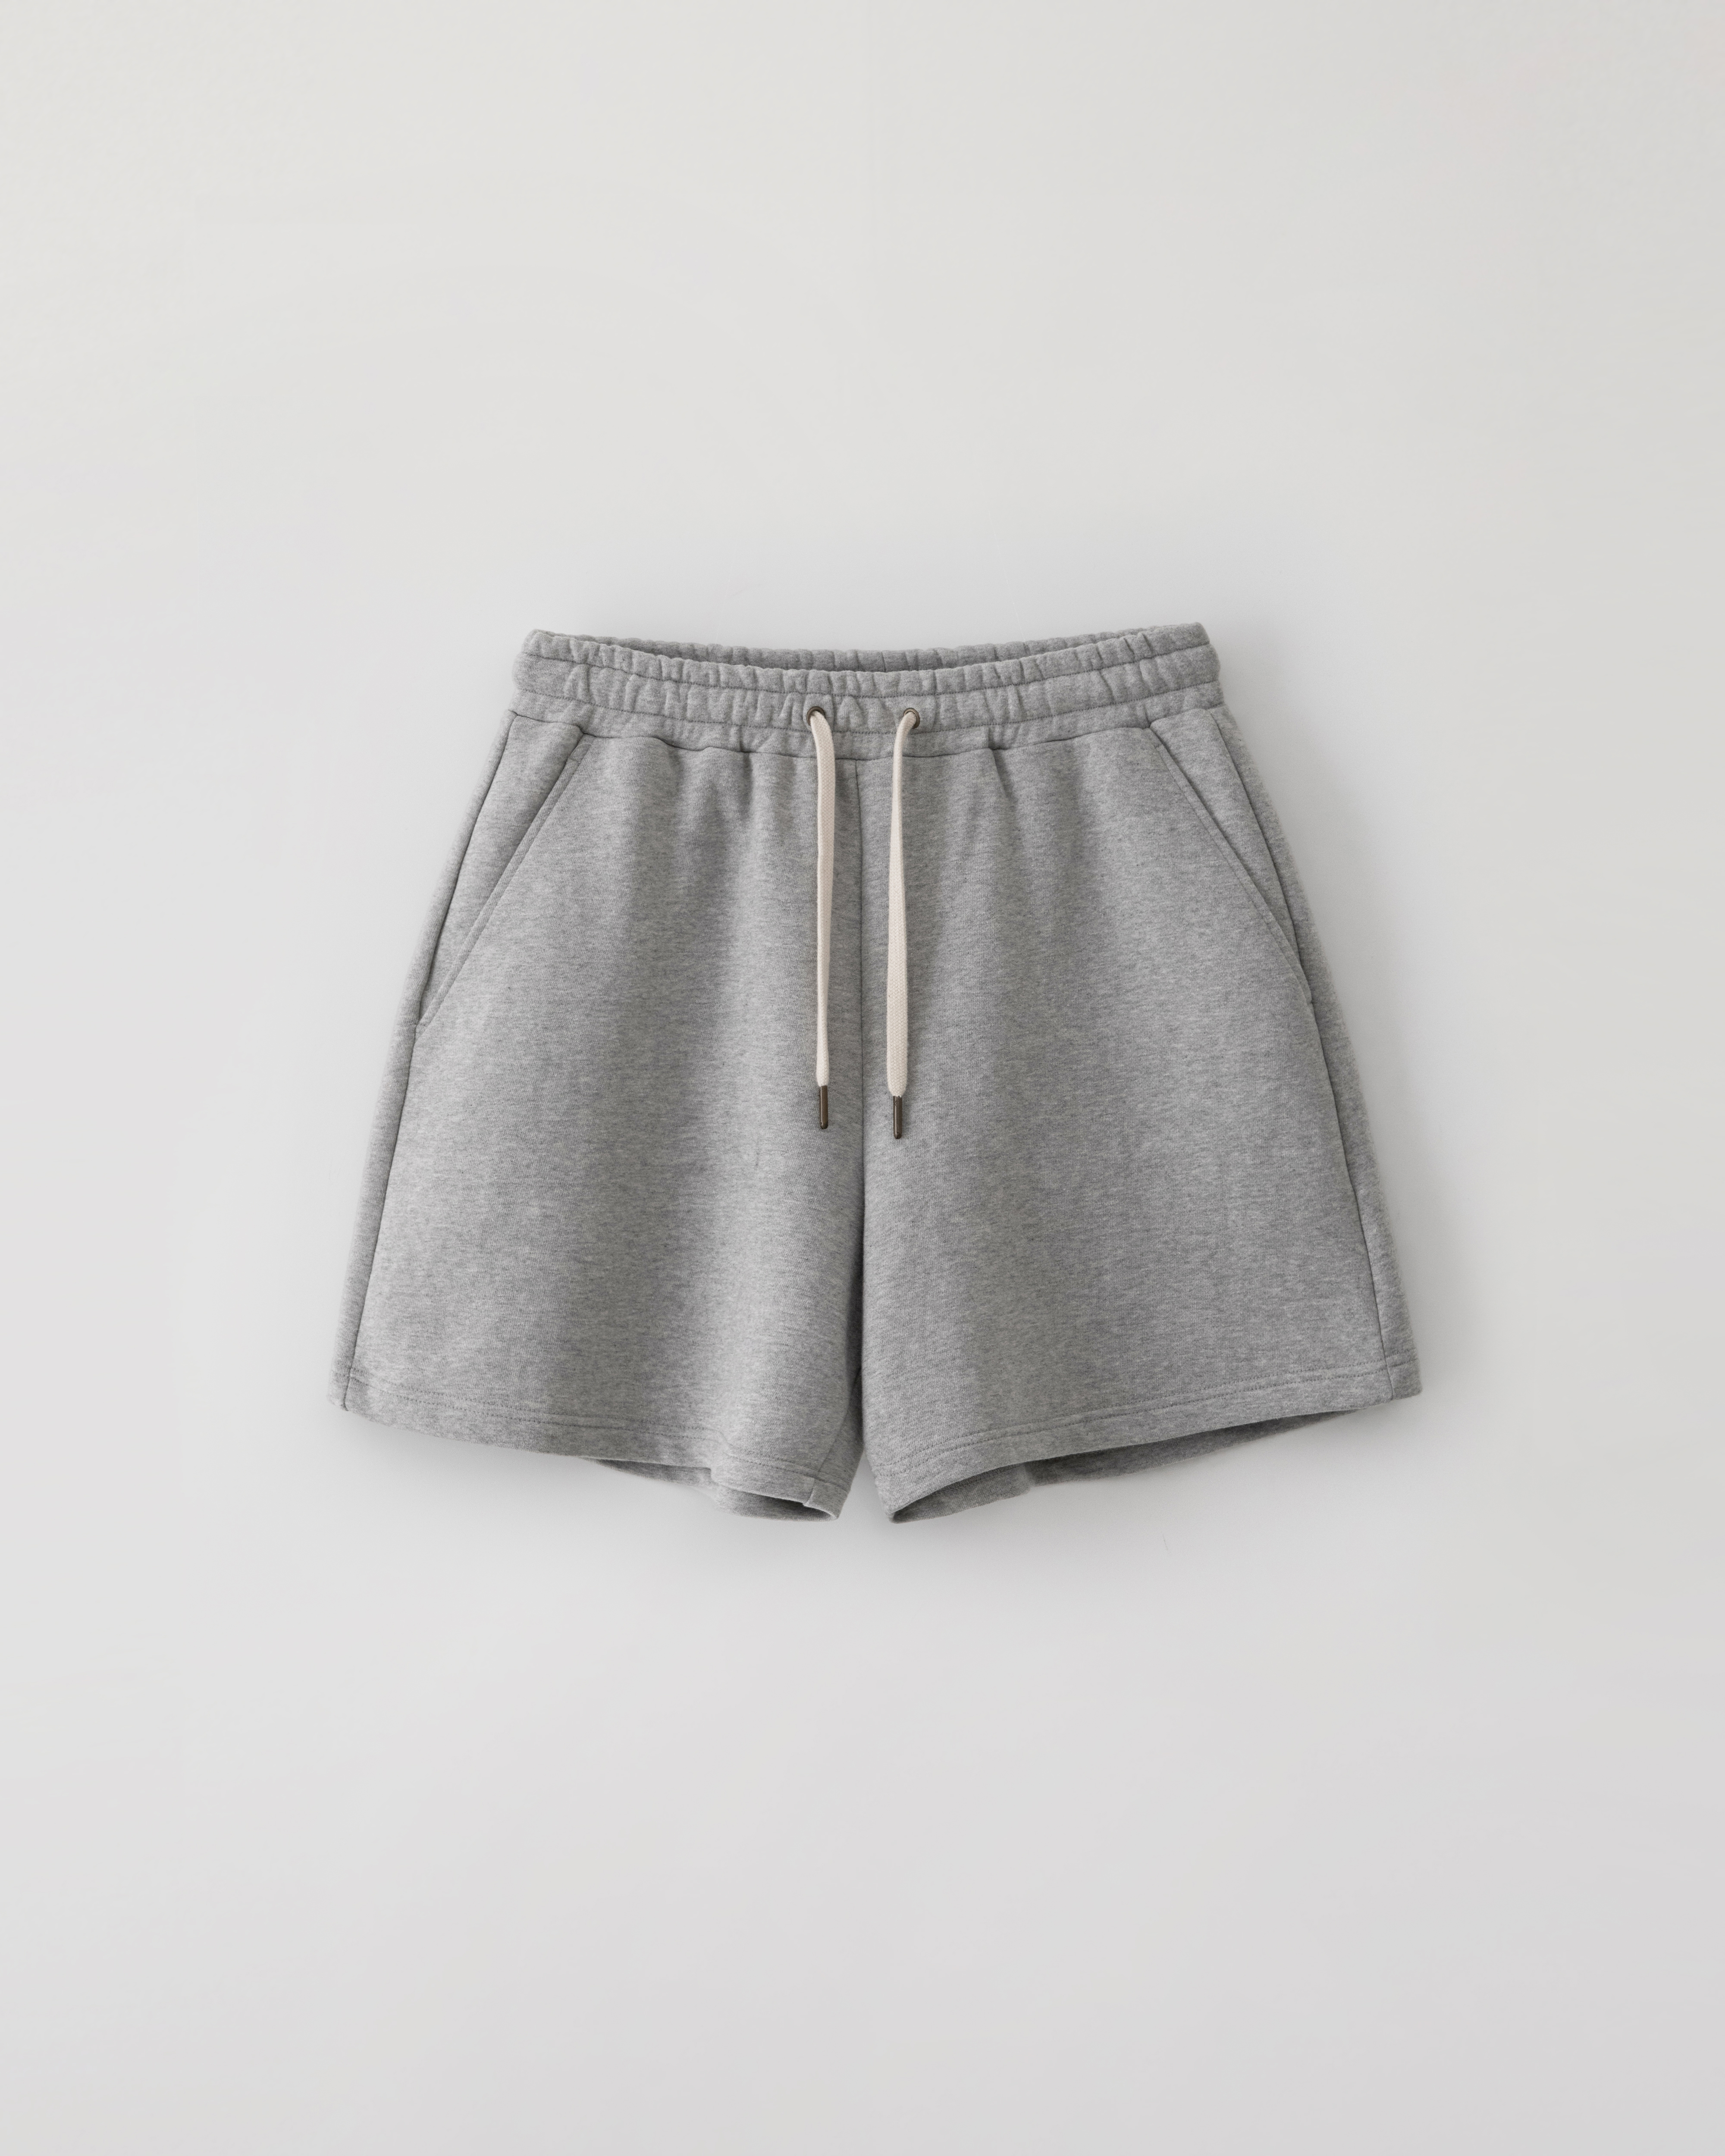 3/29(금) 발매예정 Ivy sweat shorts - melange gray